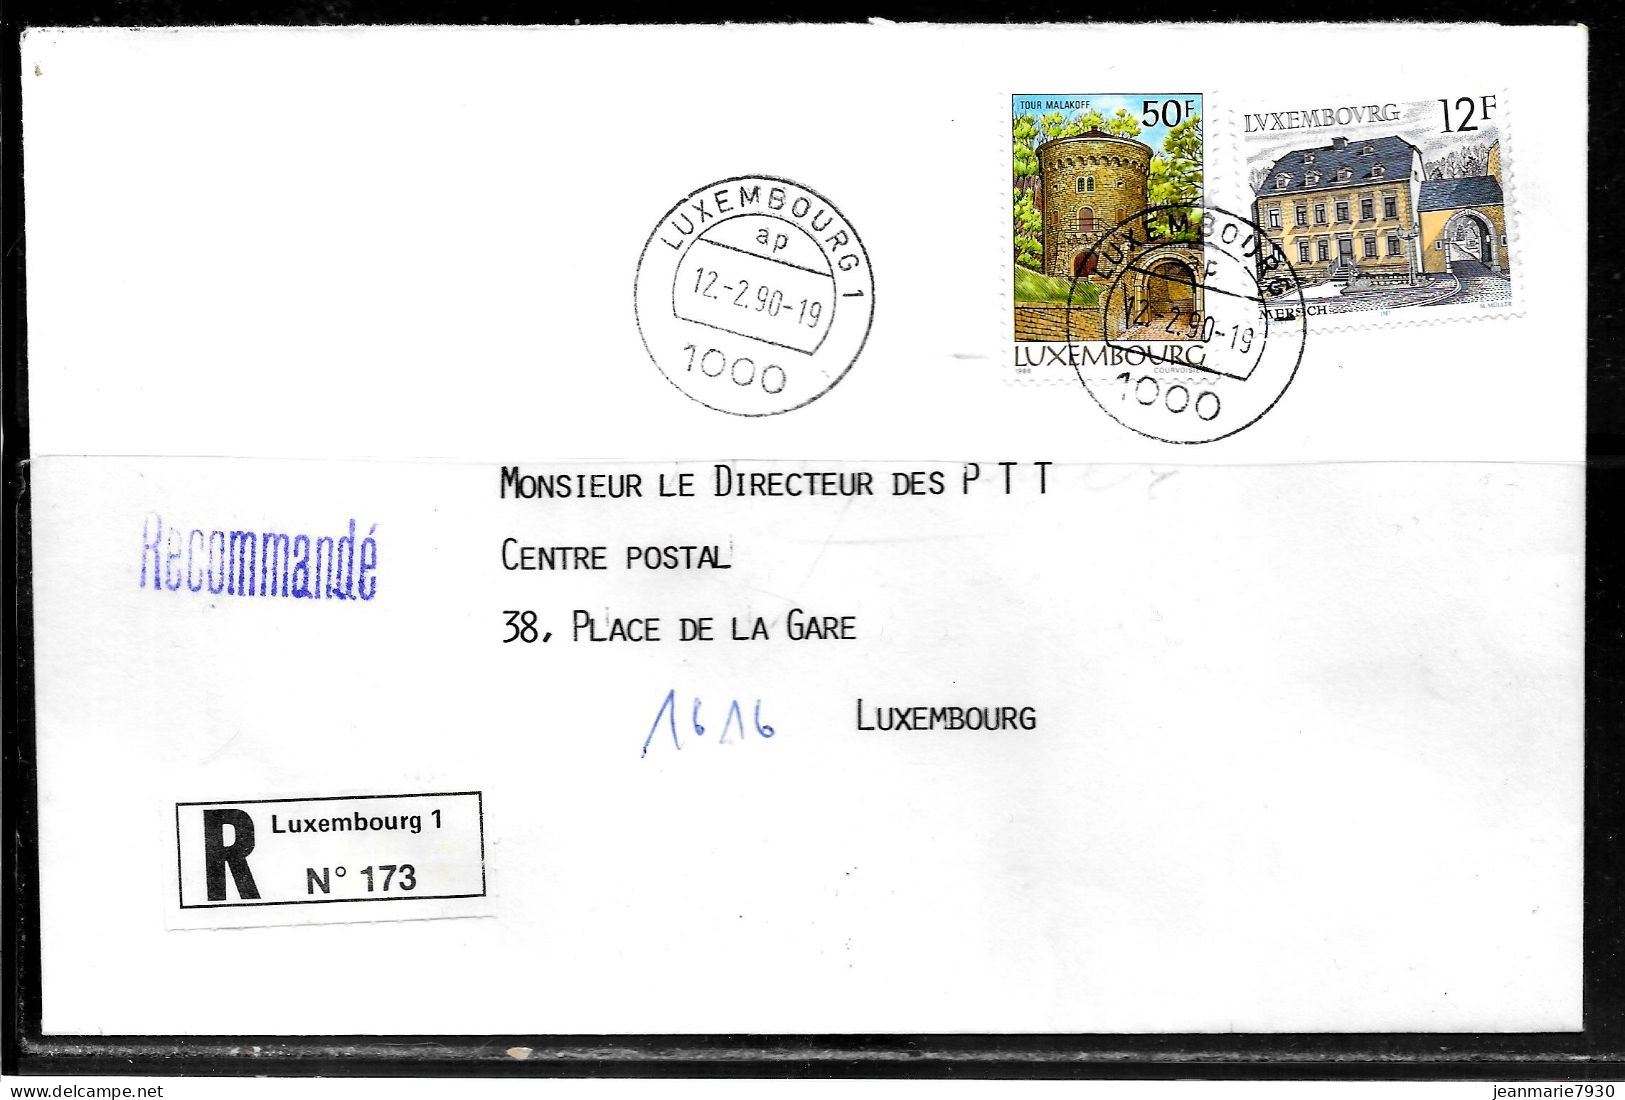 H387 - LETTRE RECOMMANDEE DE LUXEMBOURG DU 12/09/90 - Briefe U. Dokumente